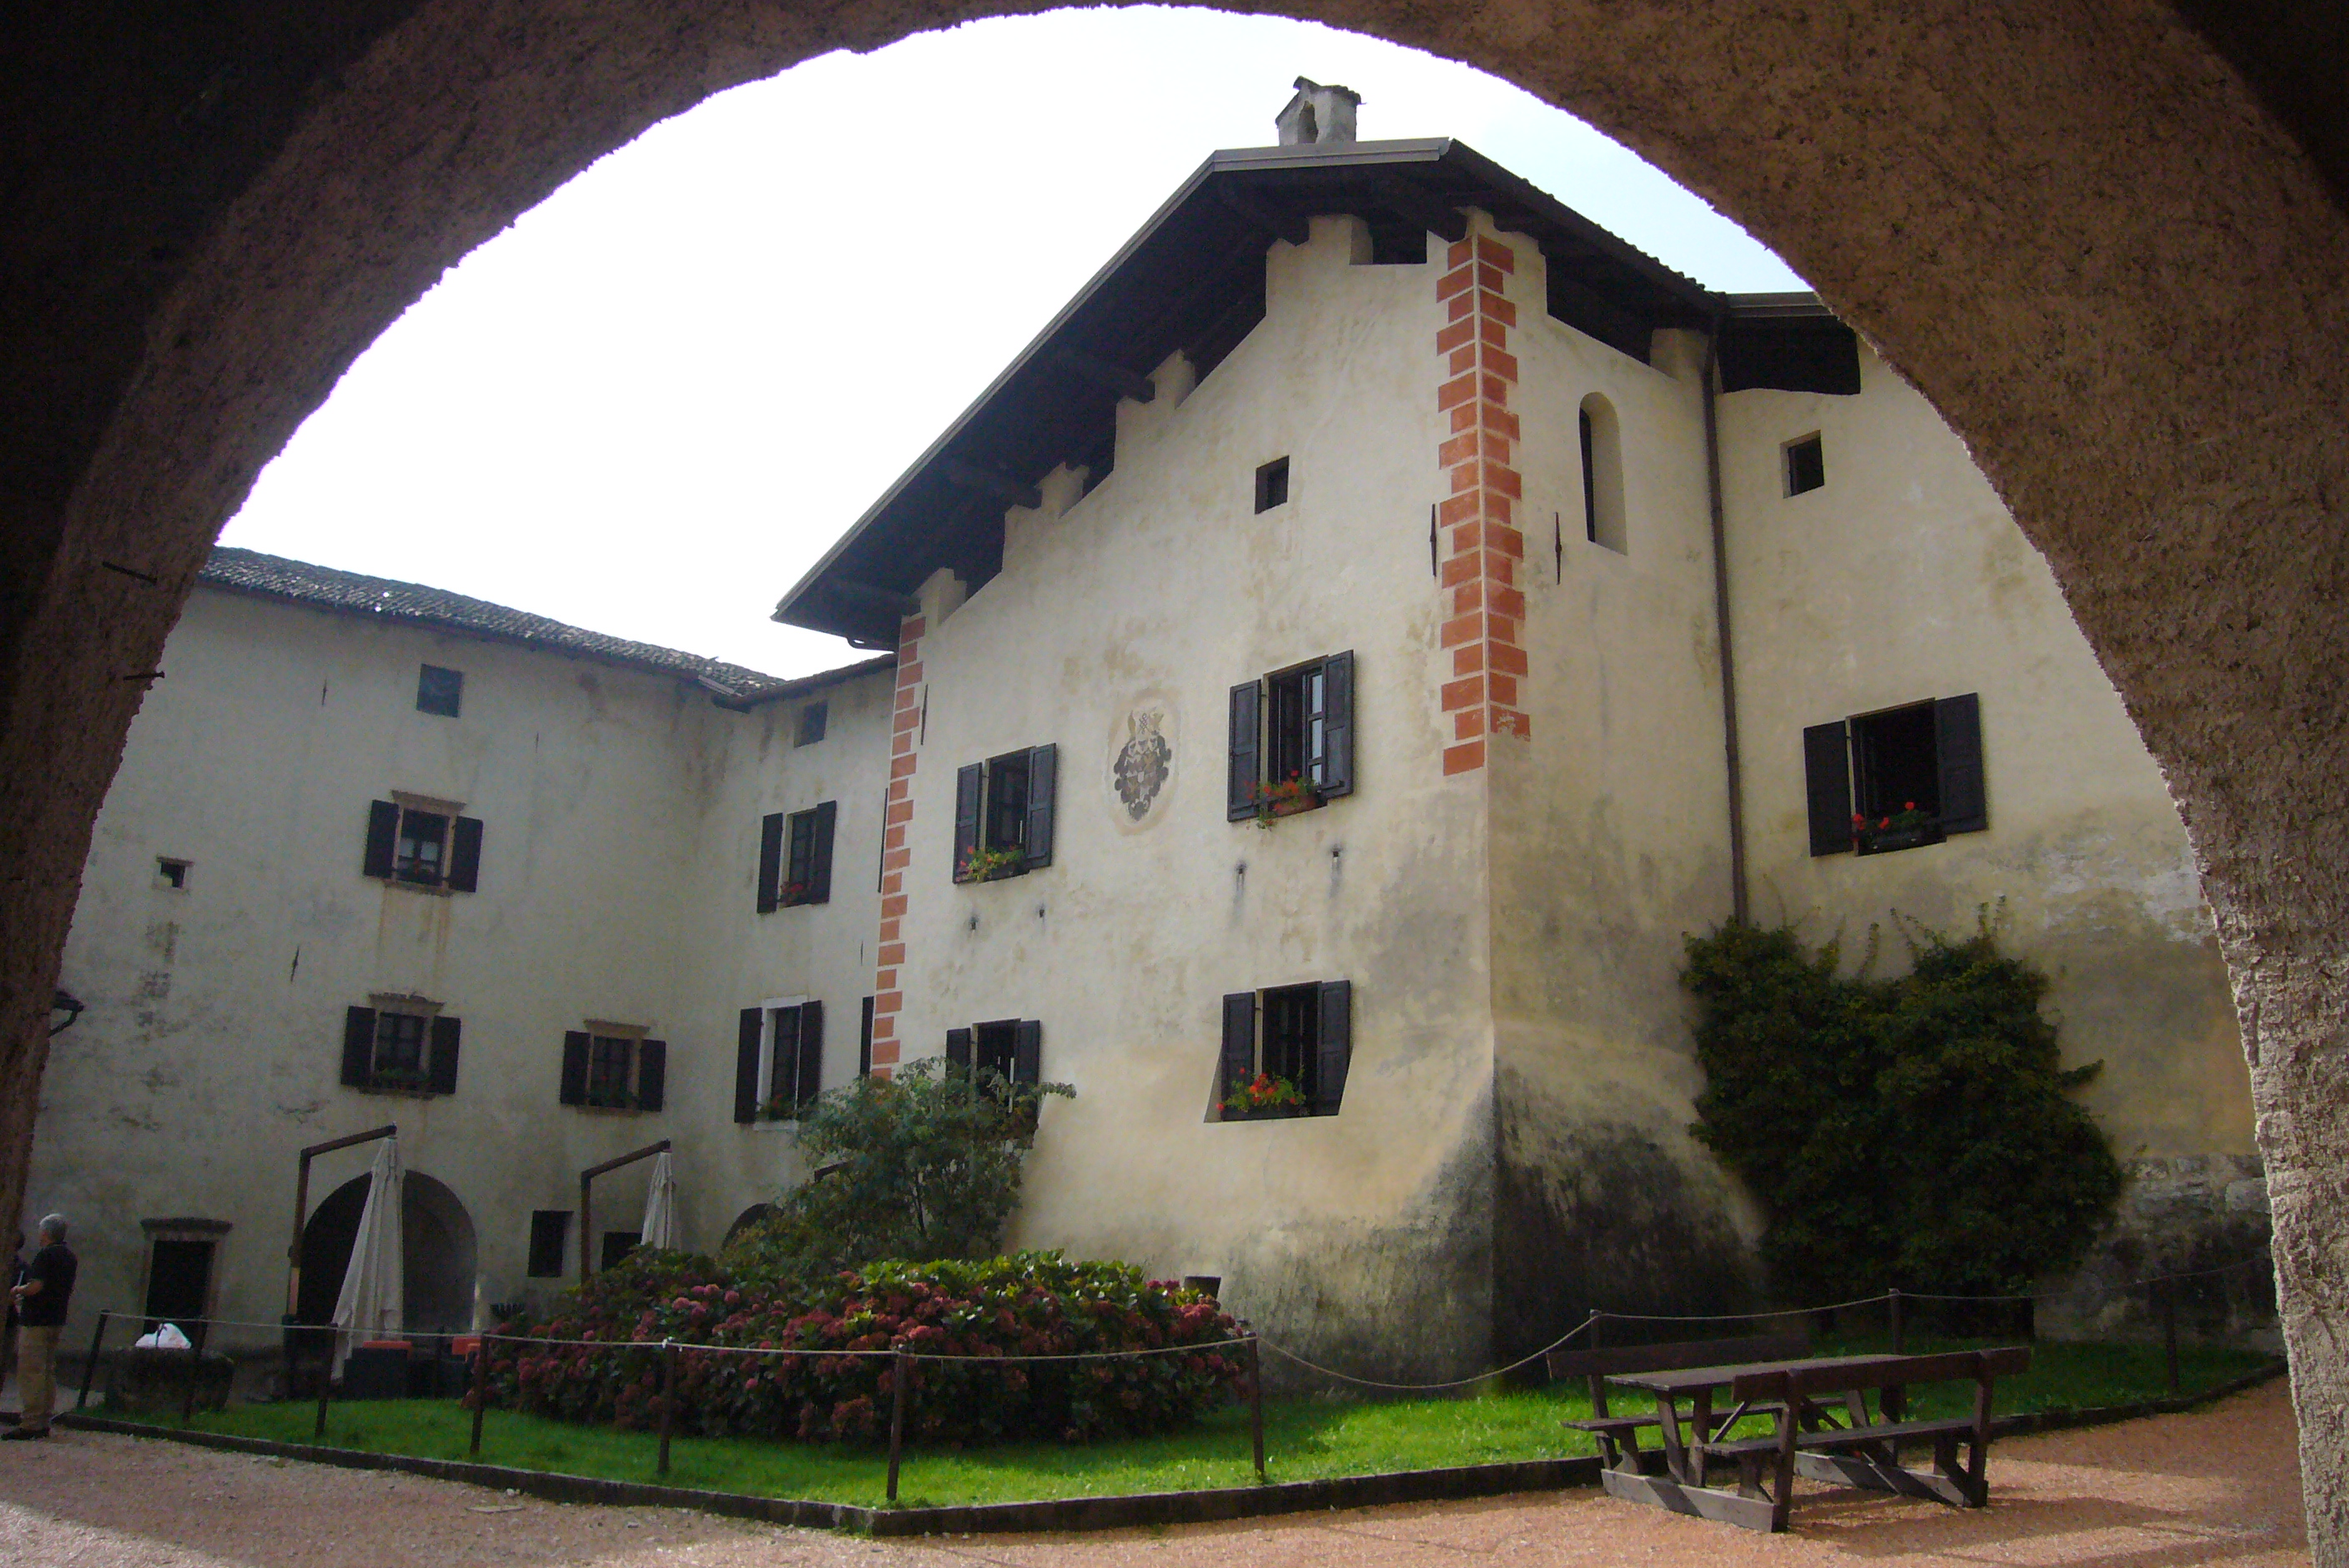 het dorpje caldonazzo